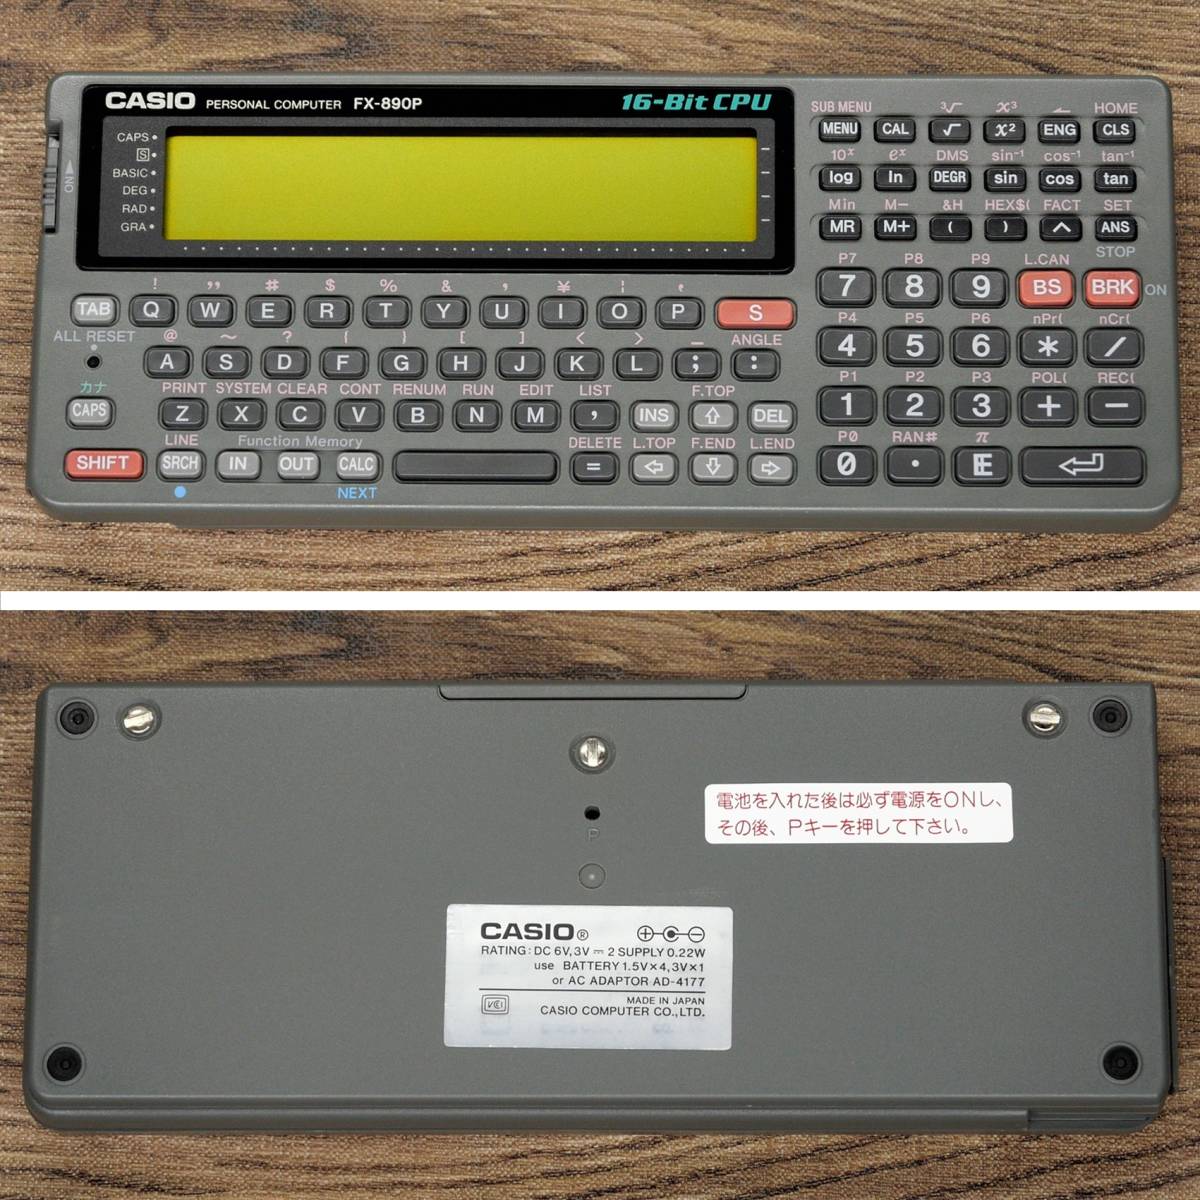 CASIO FX-890P RAM 256KB ポケットコンピュータ 整備 点検済 (カシオ ポケコン Z-1 Z-1GR 一般モデル)